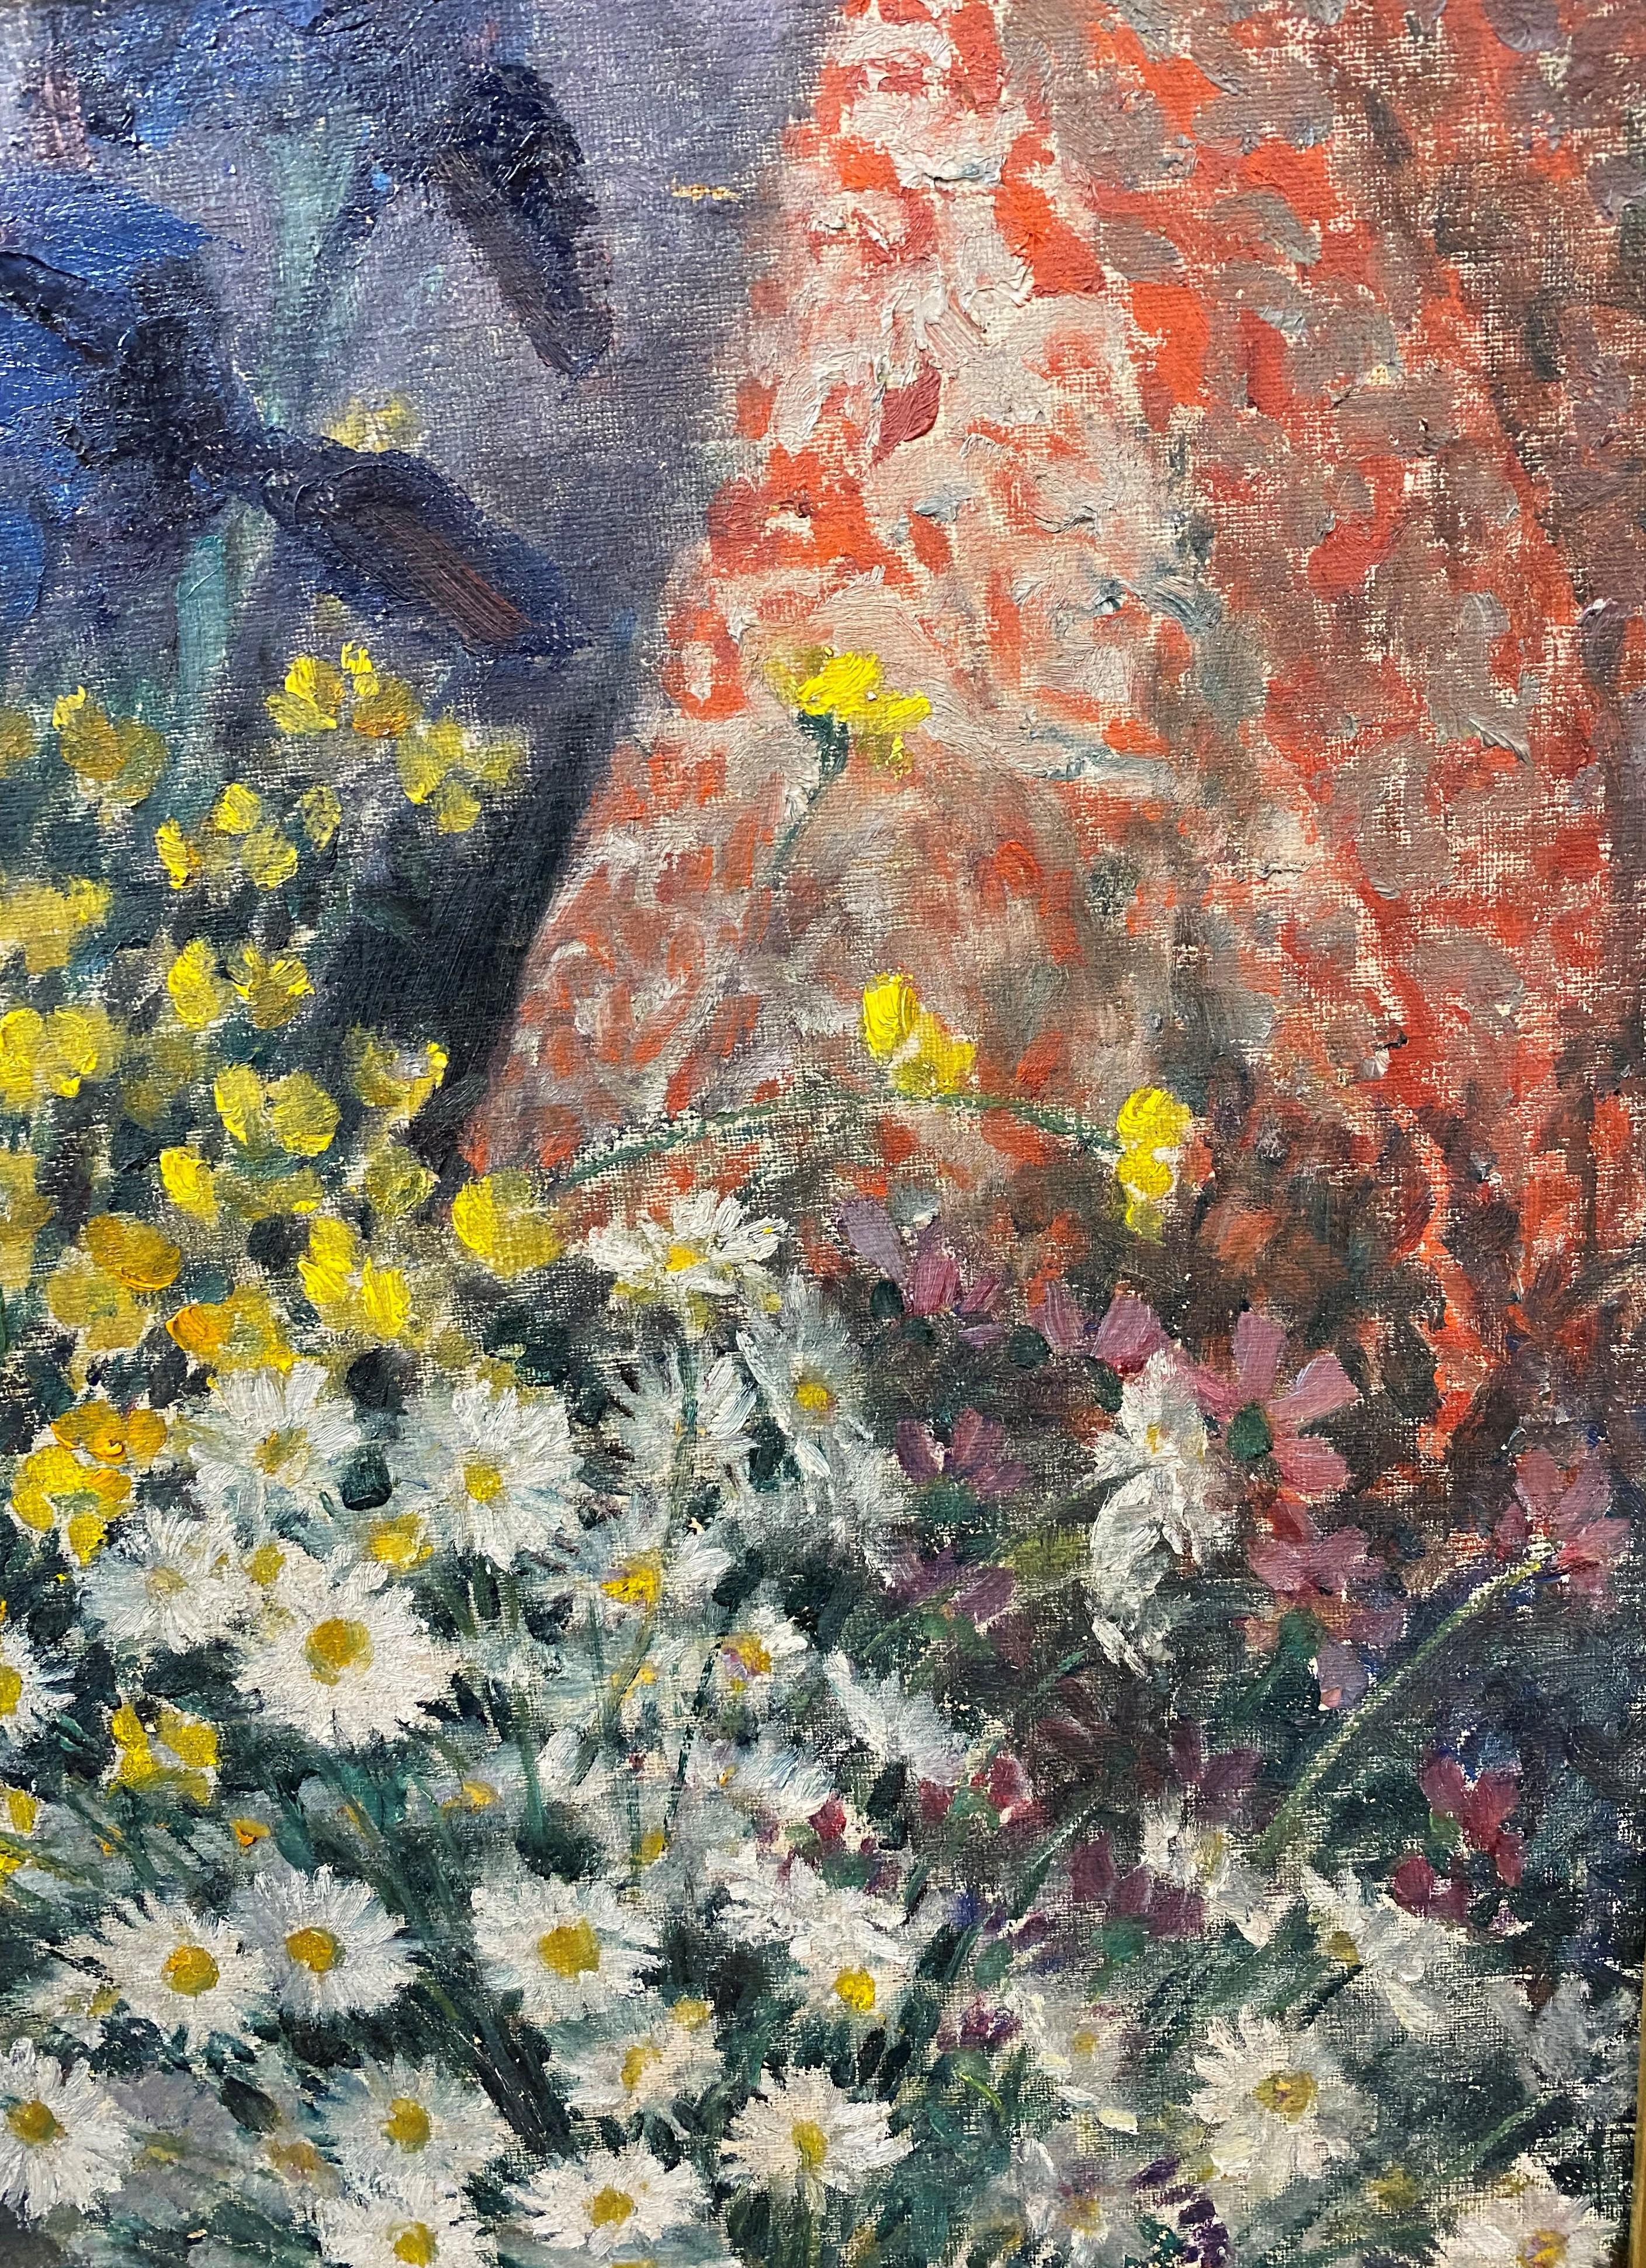 Une belle nature morte à l'huile avec des fleurs dans des vases par l'artiste américain Everett Lloyds Bryant (1864-1945). Bryant a été élevé à Galion, dans l'Ohio, et a montré très tôt des talents artistiques, mais n'a pas suivi d'études formelles